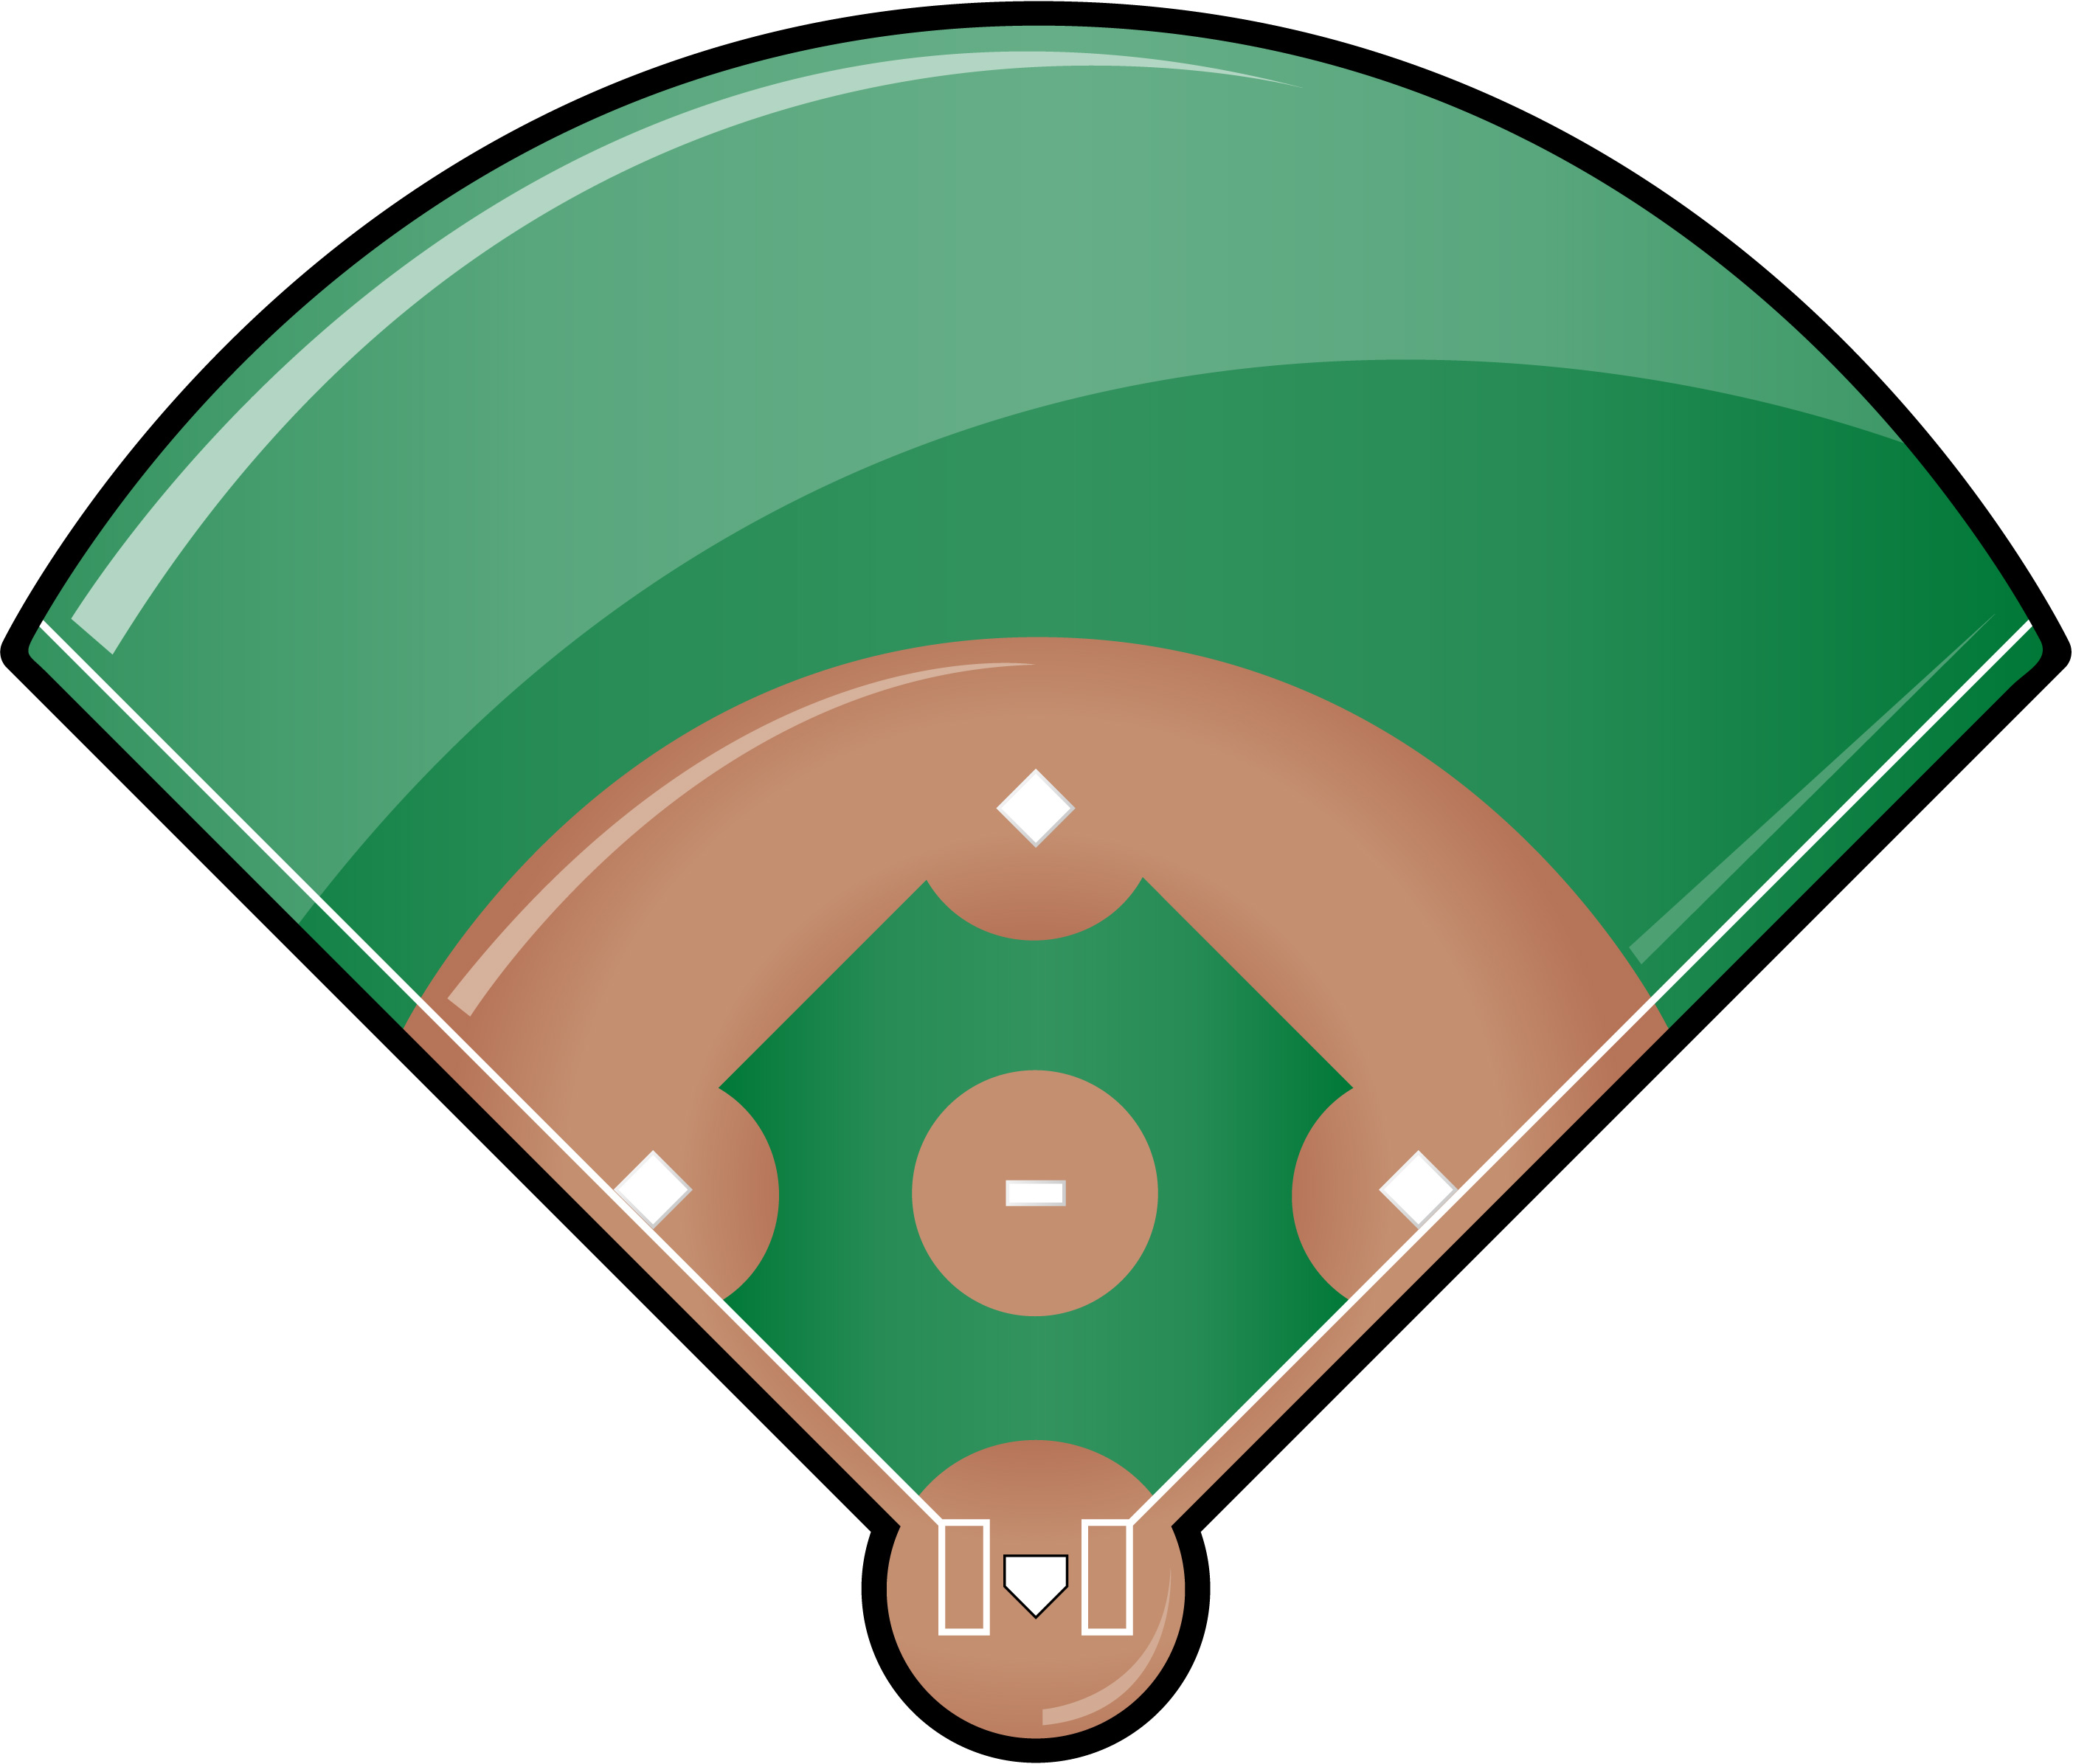 Baseball Diamond Images